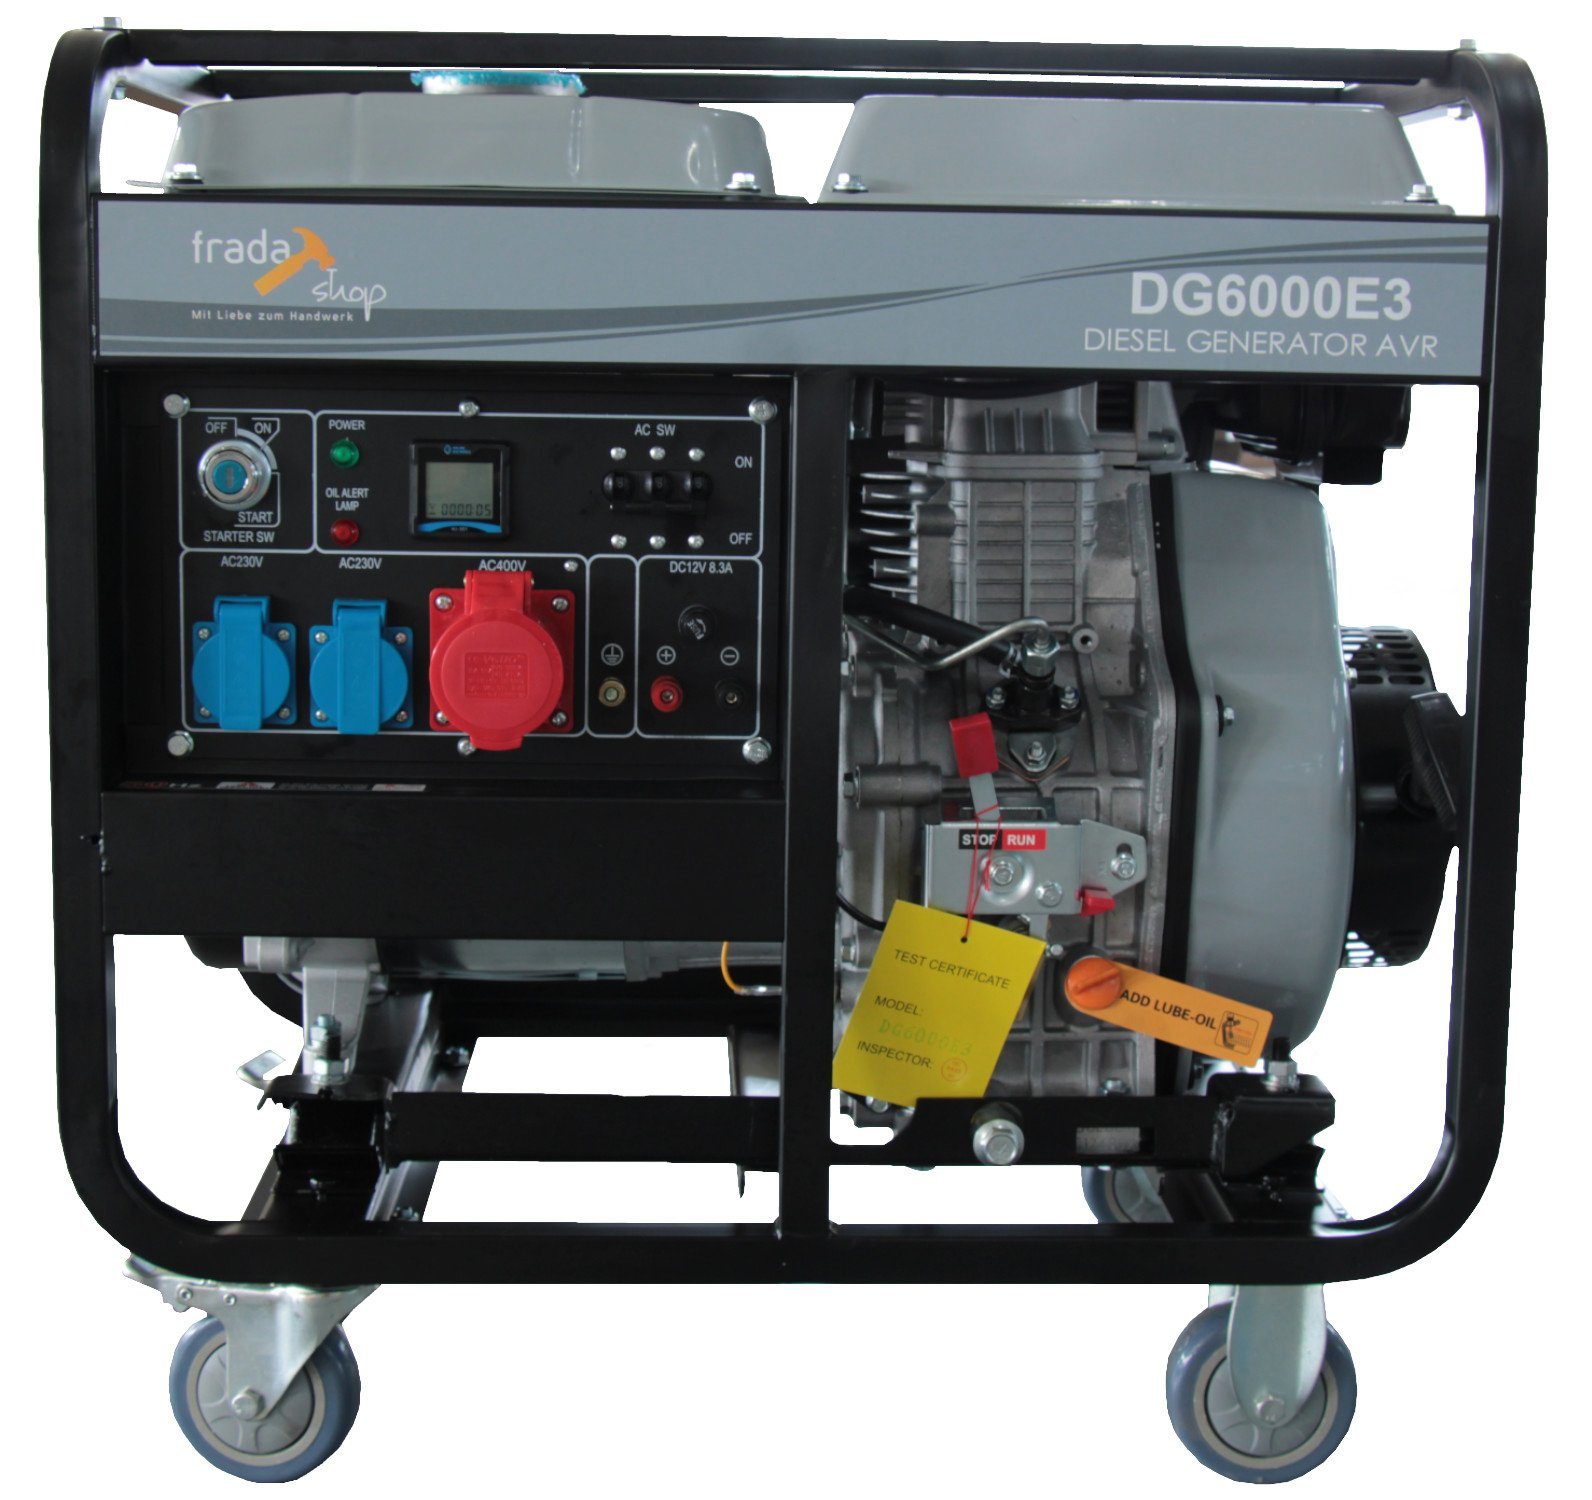 fradashop Stromerzeuger Diesel Generator DG6000E3 AVR 6kVA